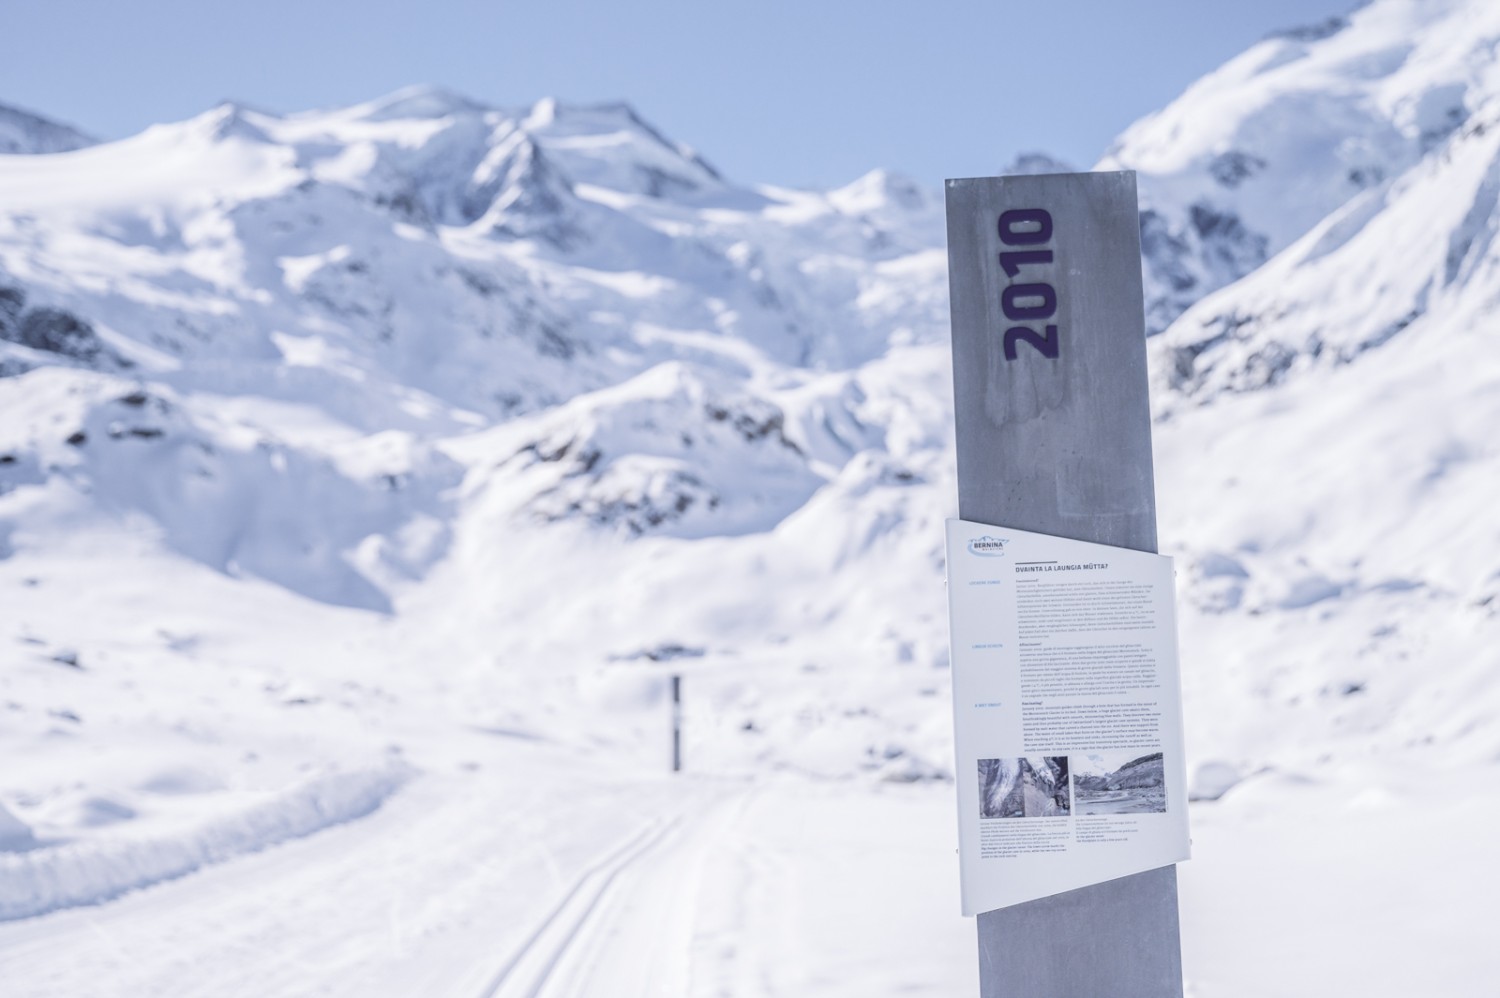 Vereinzelt findet man immer wieder diese Schilder auf der Winterwanderung. Diese markieren den Standort der Gletscherzunge im dementsprechenden Jahr. Bild: Jon Guler